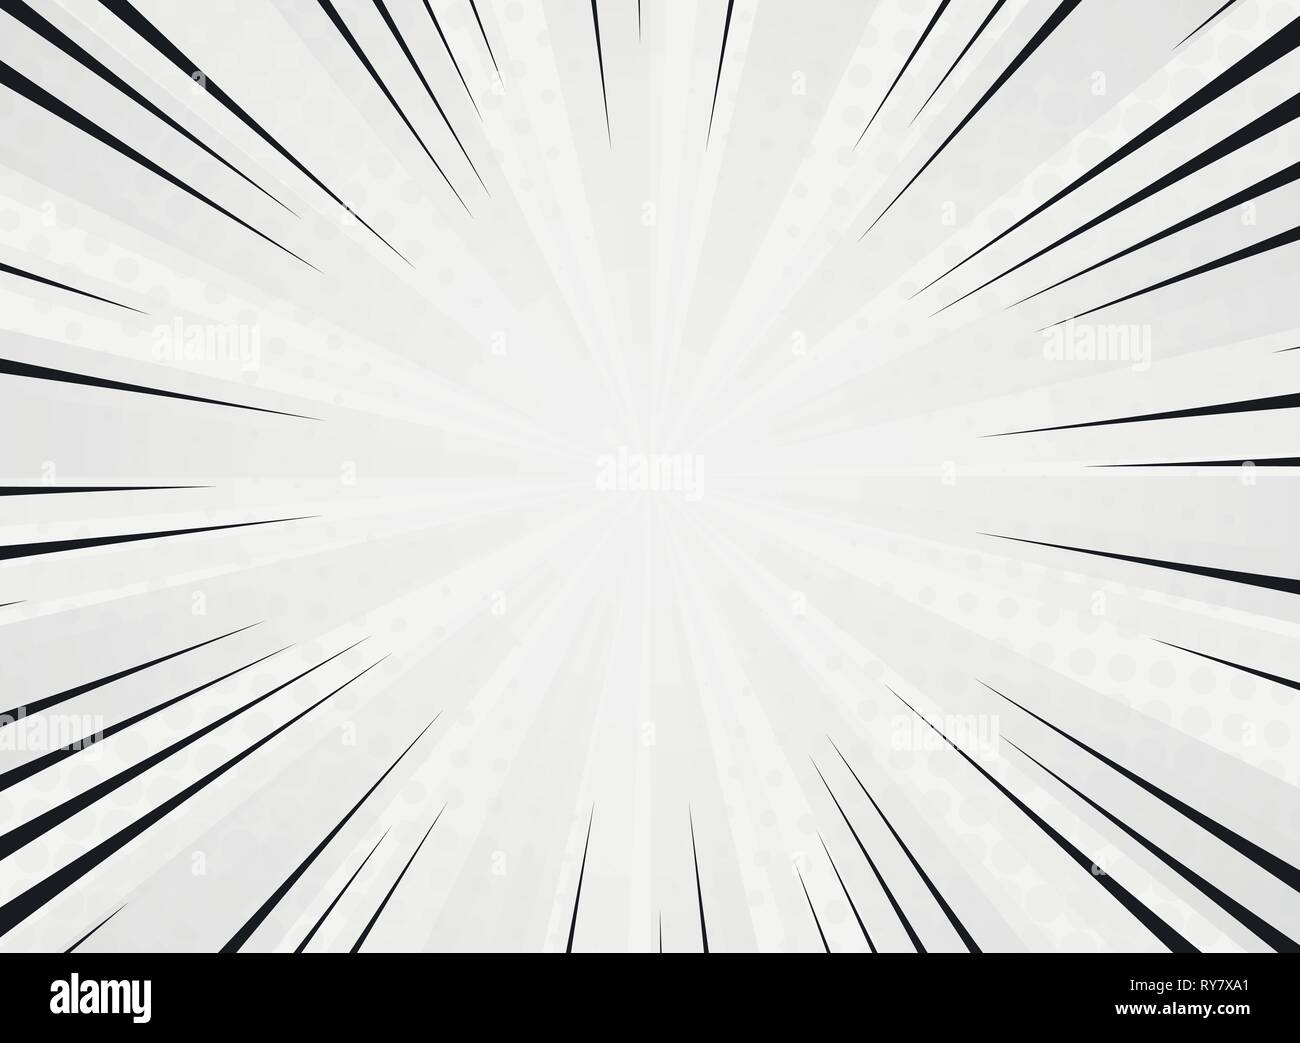 Abstract sun burst fumetto di linea di colore bianco in background. È possibile utilizzare per lo spazio grafico decorare, ad, poster, hot promozione, vendita opere d'arte. illustrati Illustrazione Vettoriale